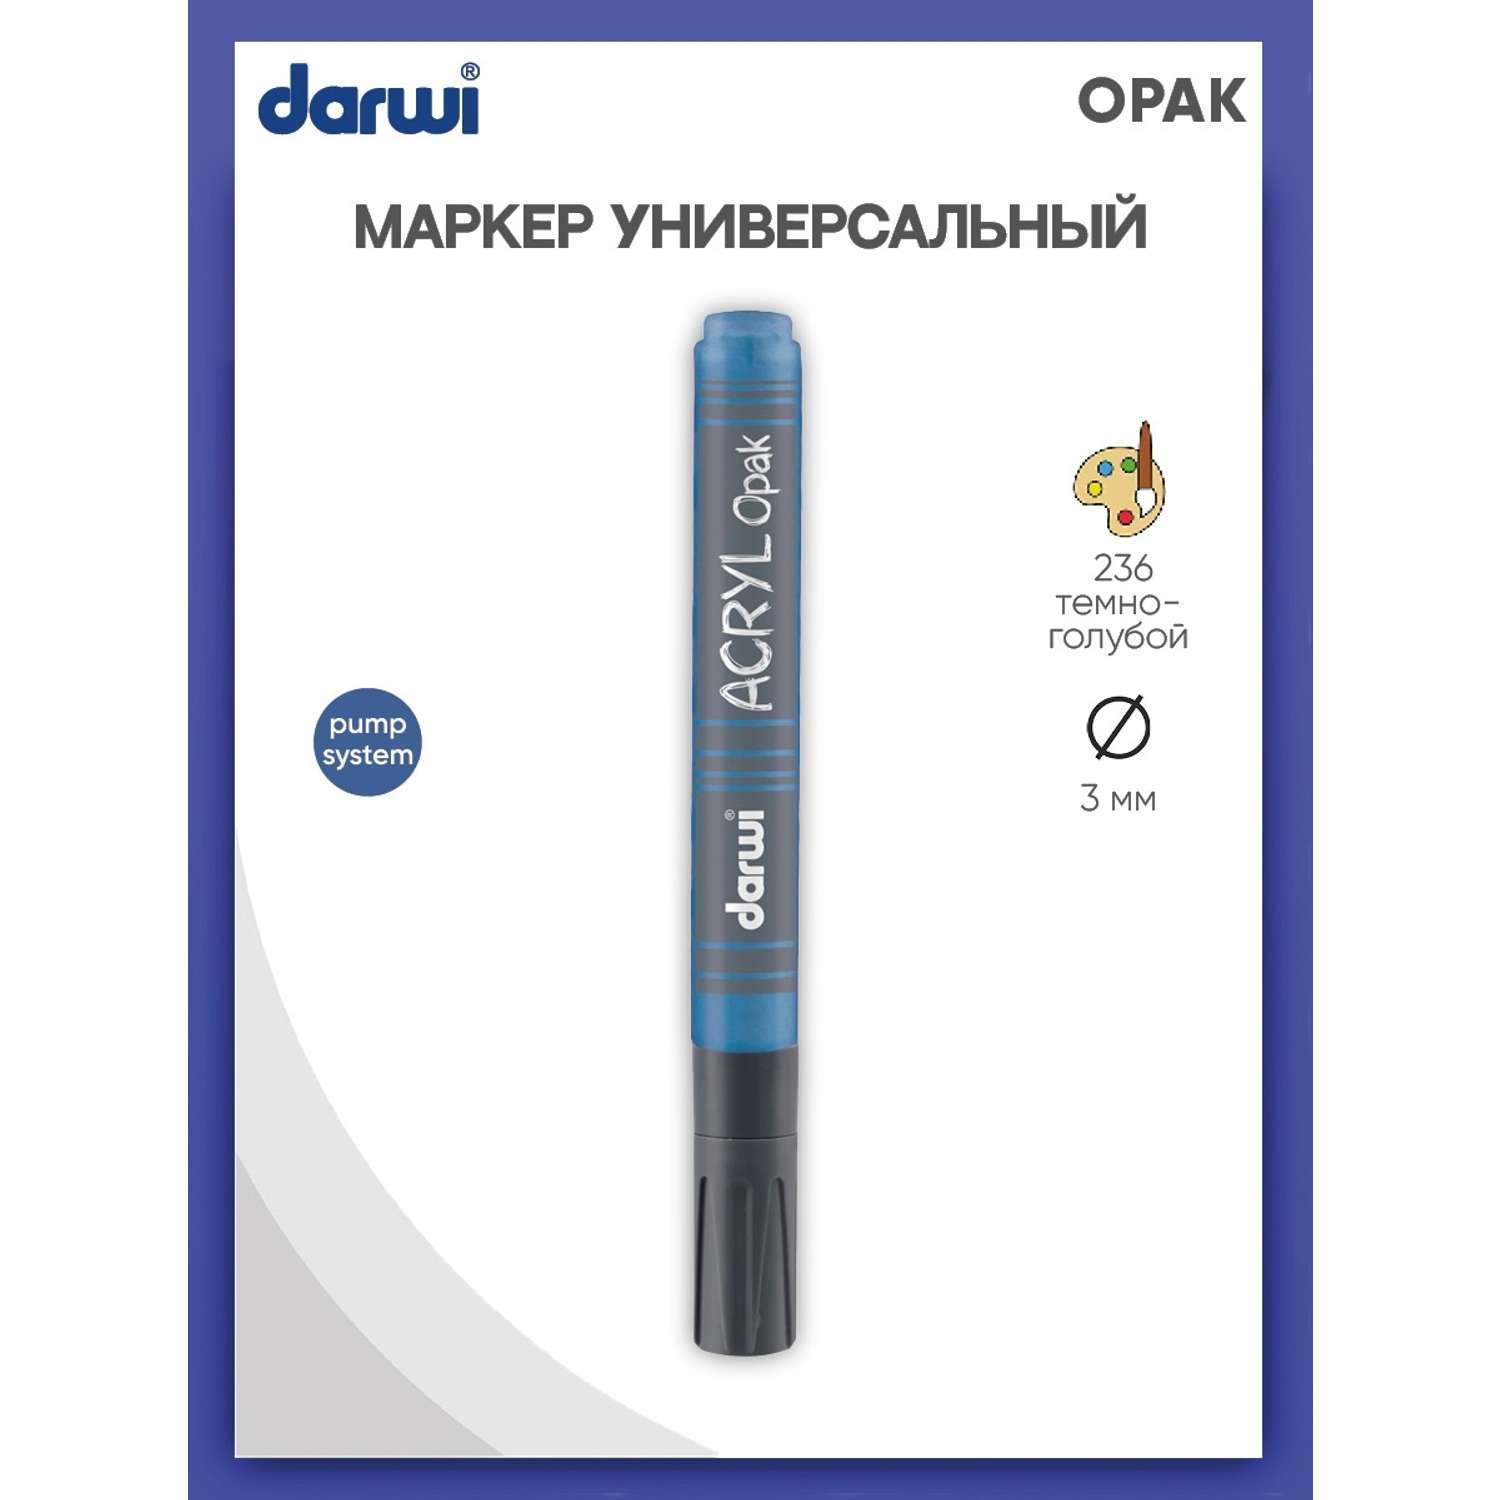 Маркер Darwi акриловый OPAK DA0220013 3 мм укрывистый 236 темно - голубой - фото 1